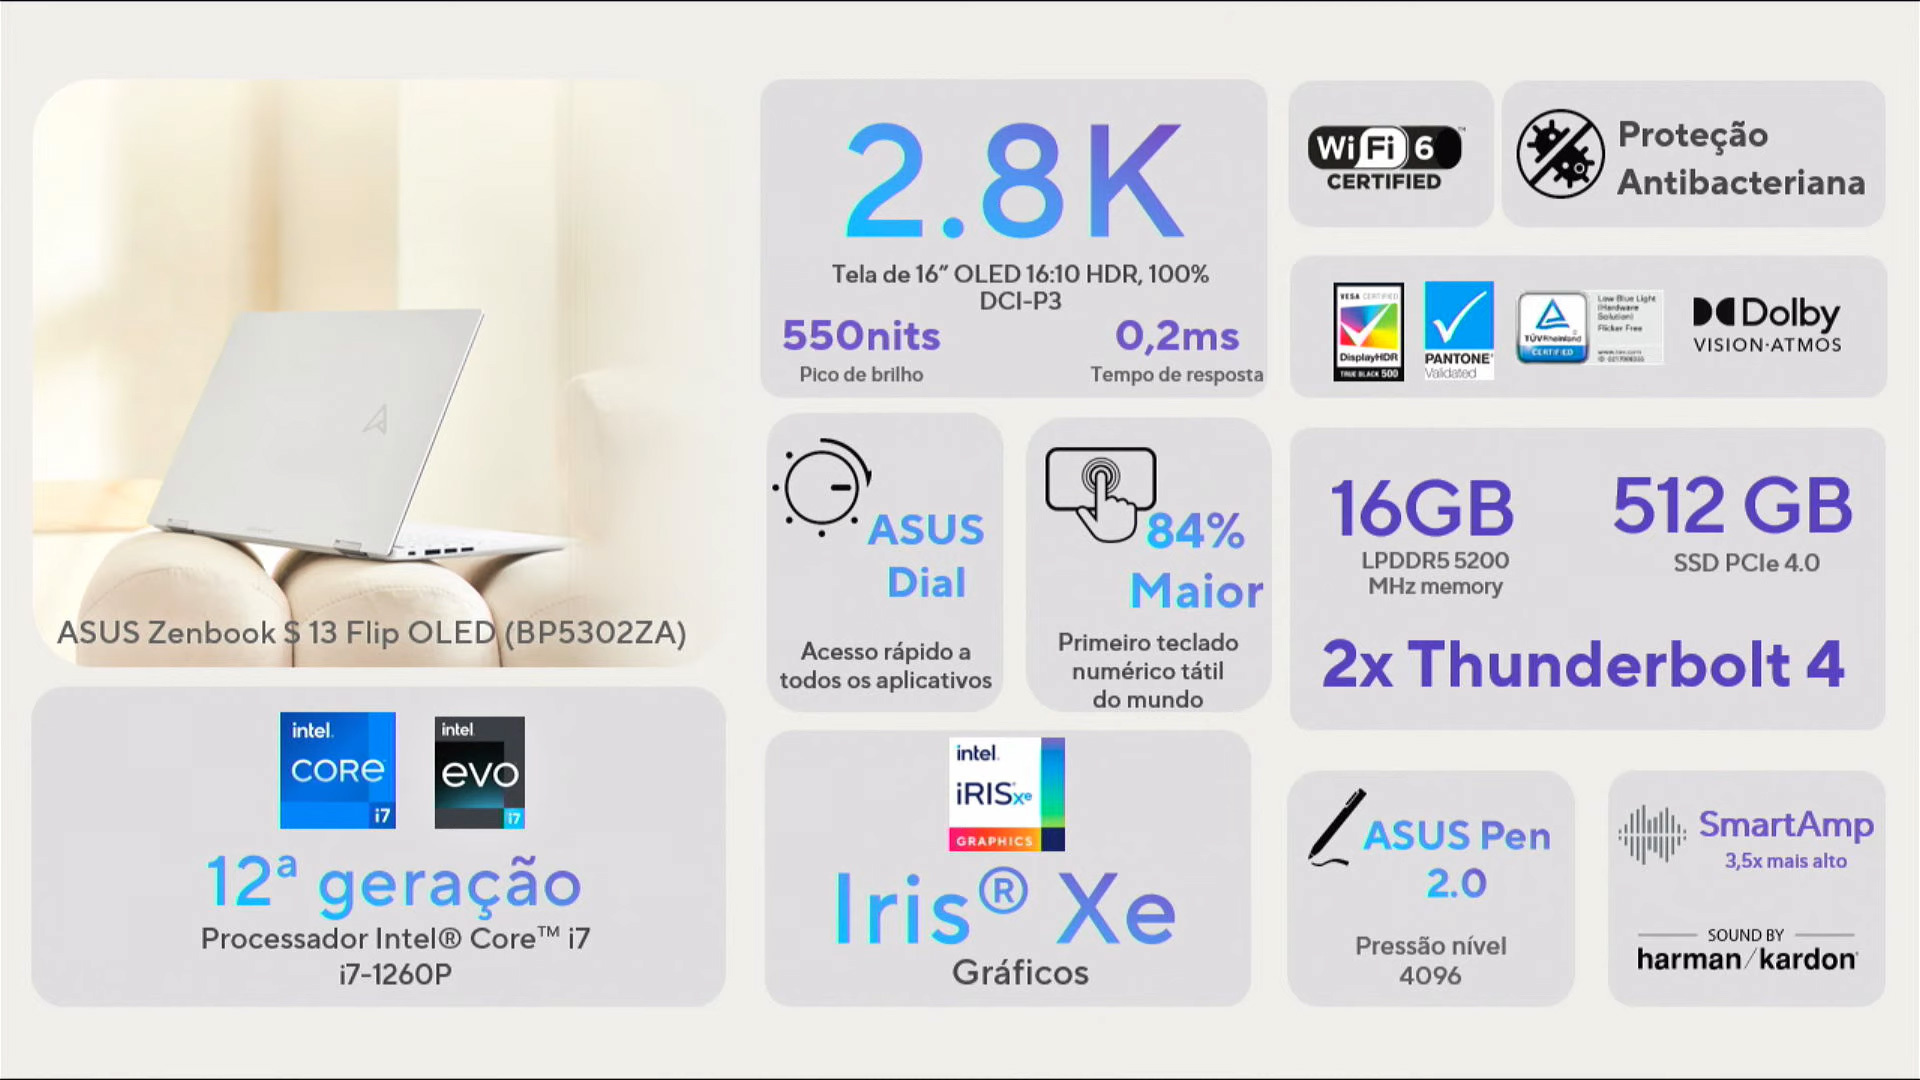 Asus Zenbook S 13 Flip OLED Features.